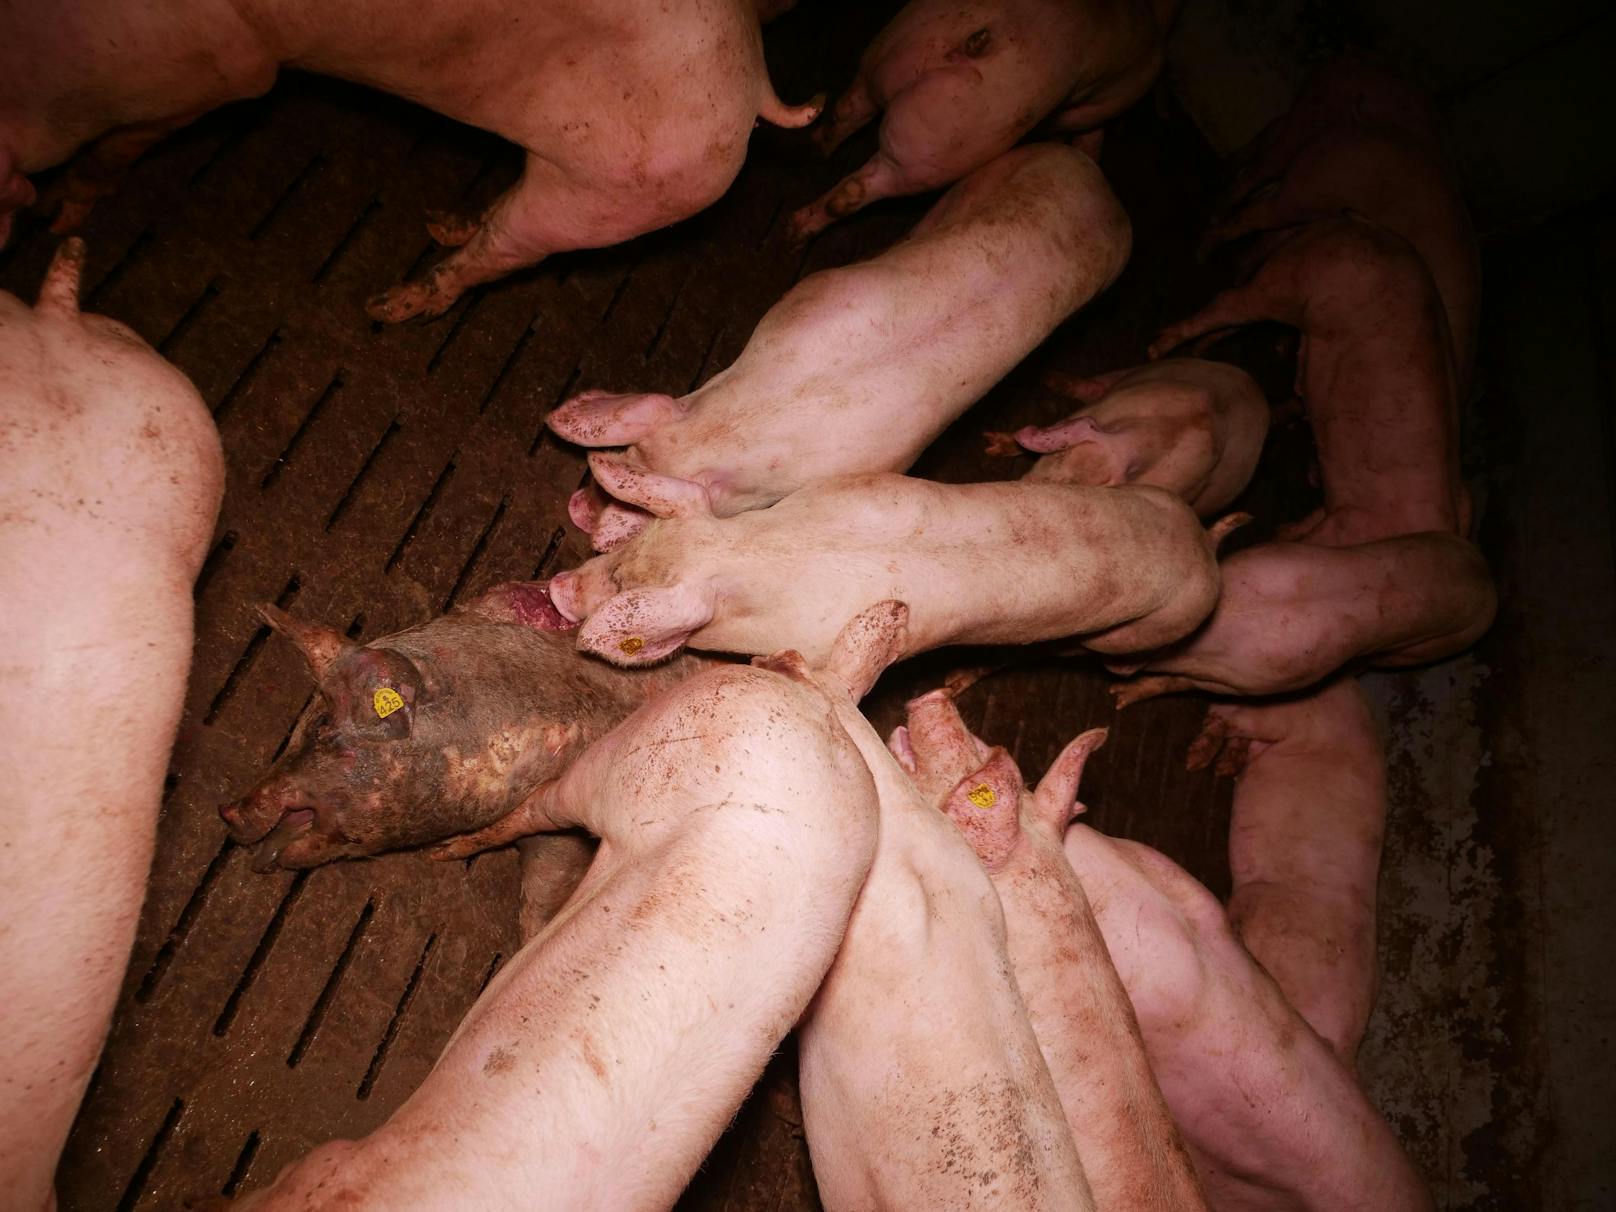 Im Schweinestall herrschen den Bilder zufolge erschreckende Zustände.